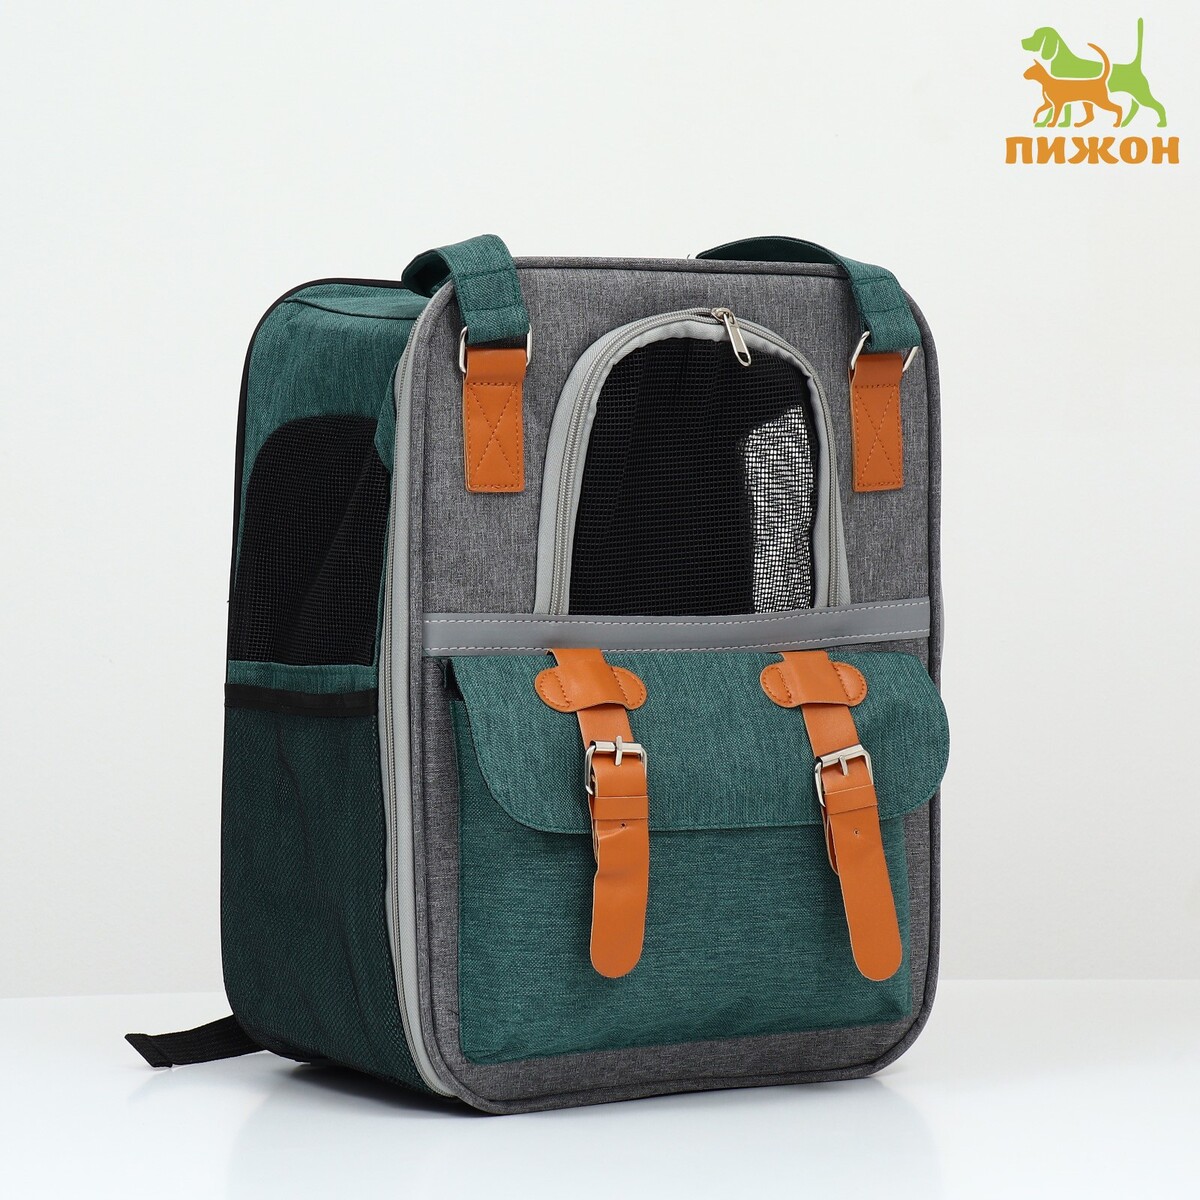 Рюкзак-переноска для животных, 52 х 22 х 41 см, зеленый рюкзак для переноски животных прозрачный 31 х 28 х 42 см зеленый